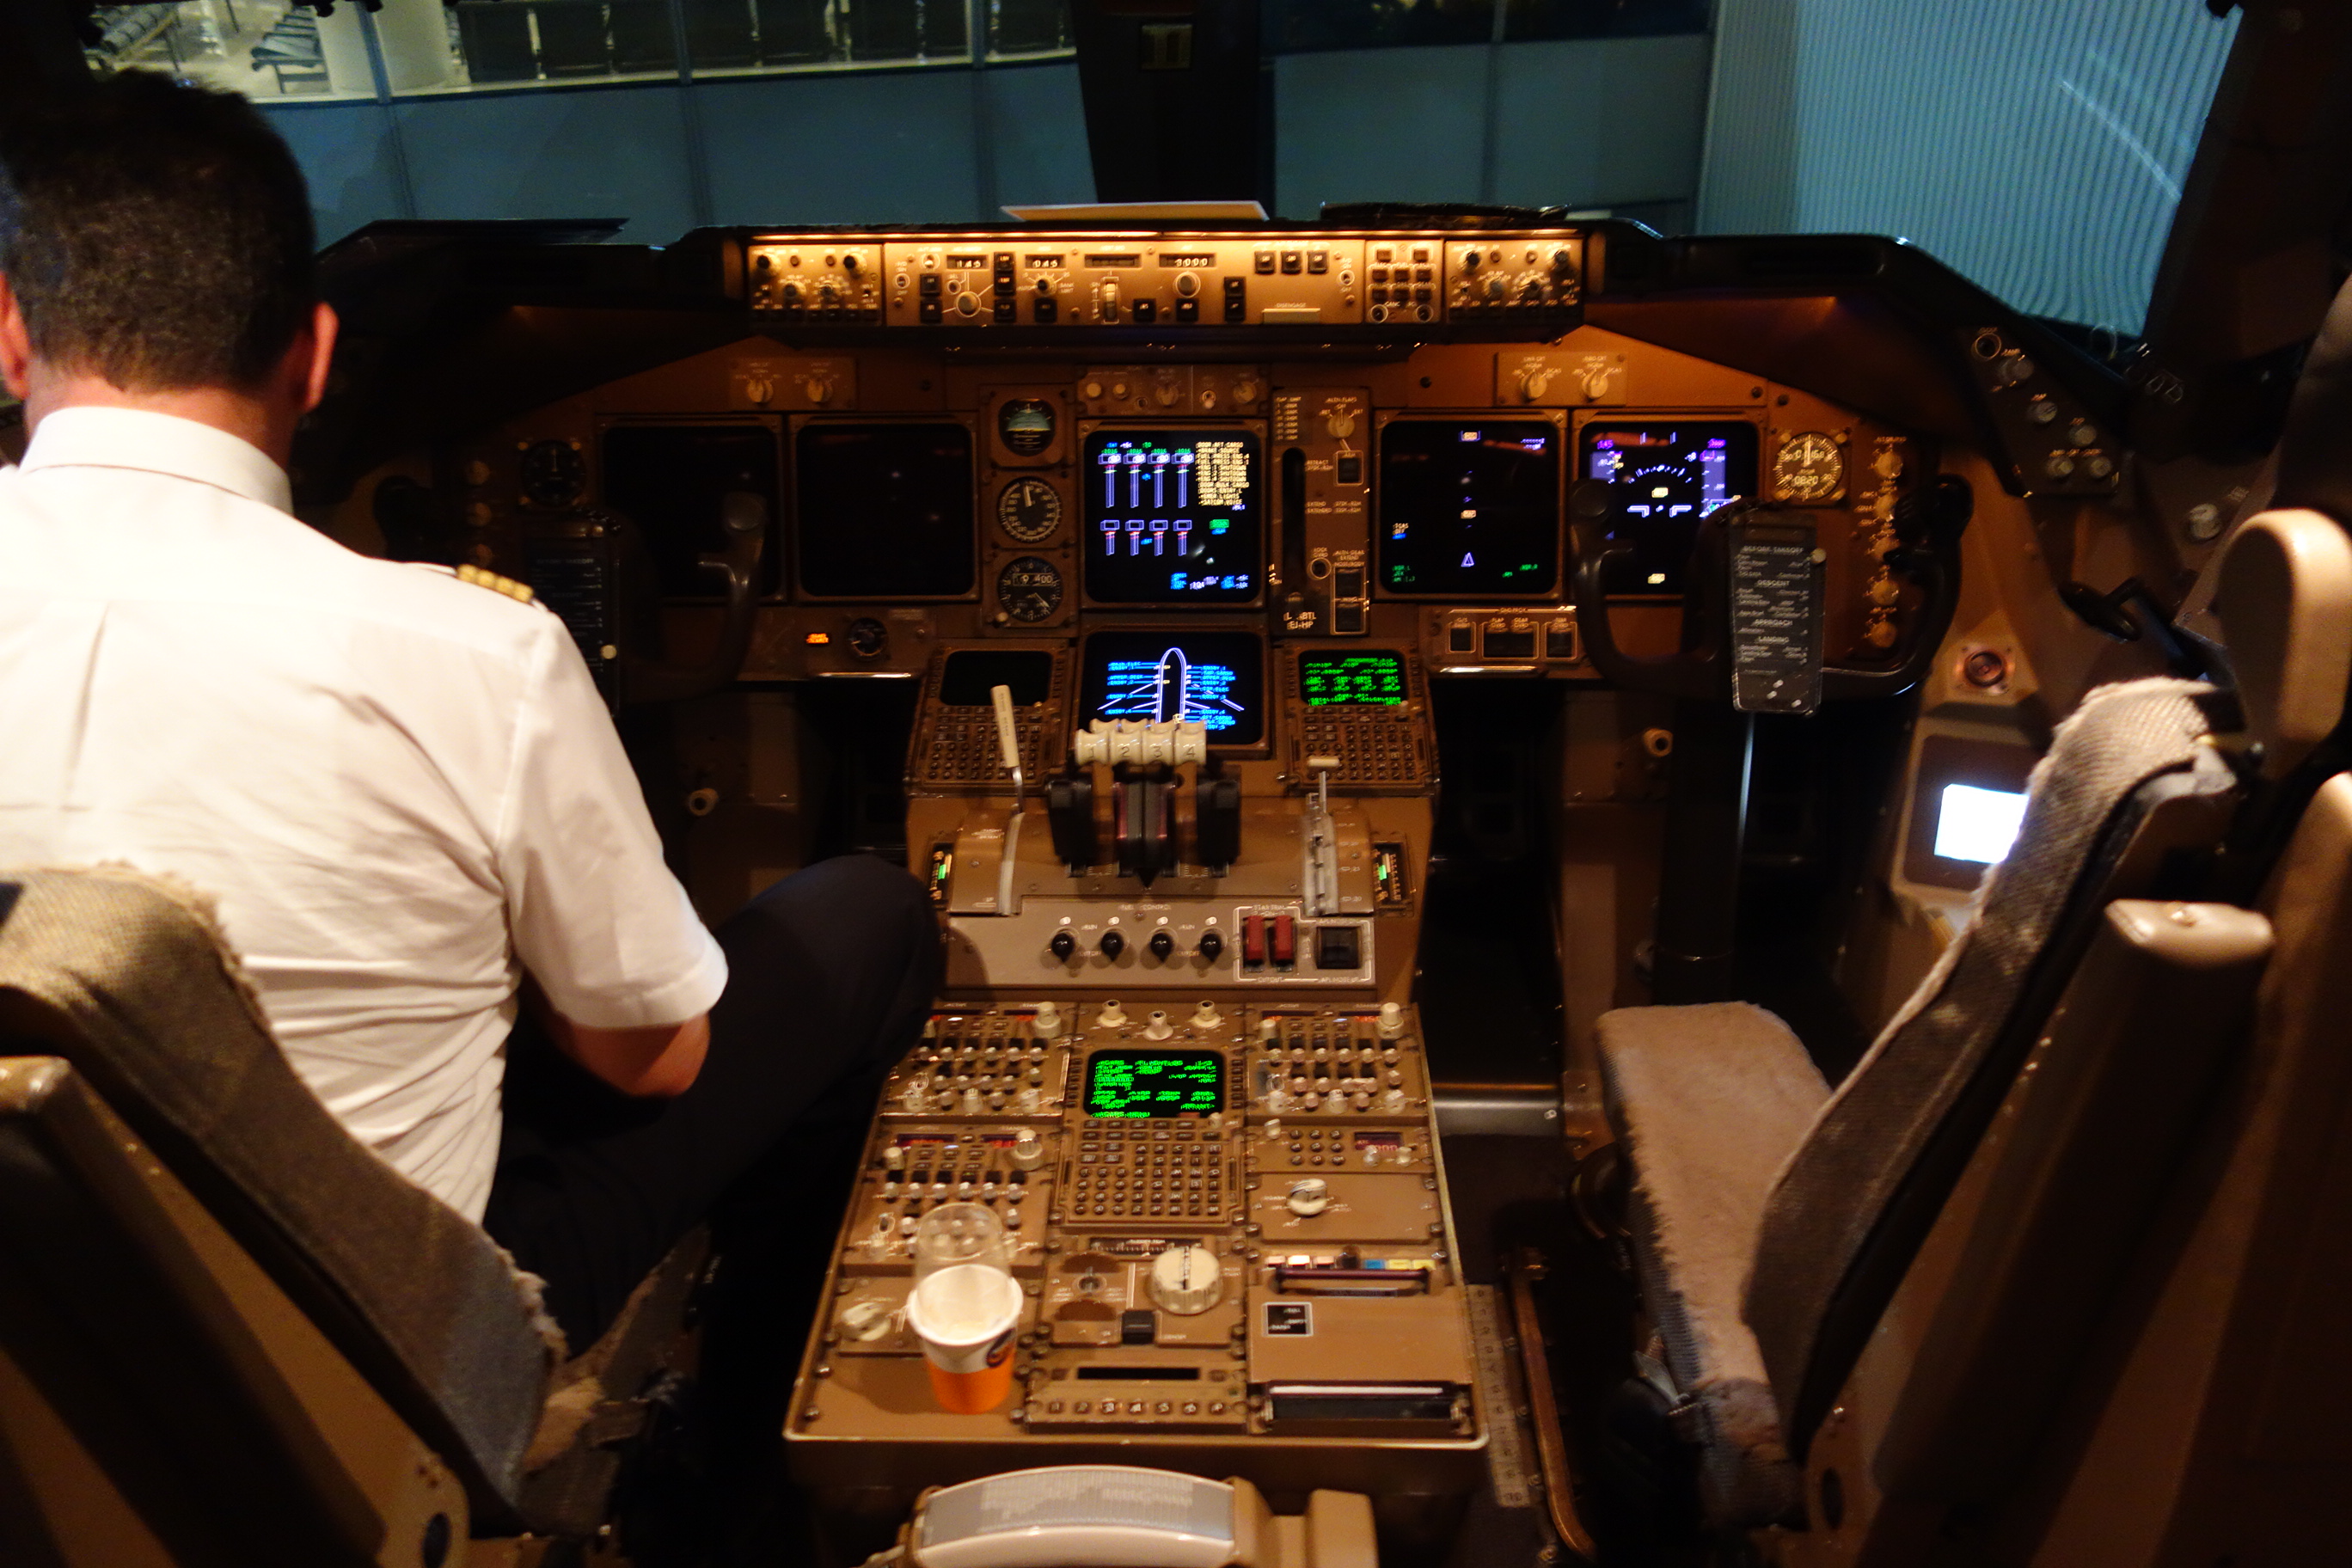 B747-400 cockpit after landing